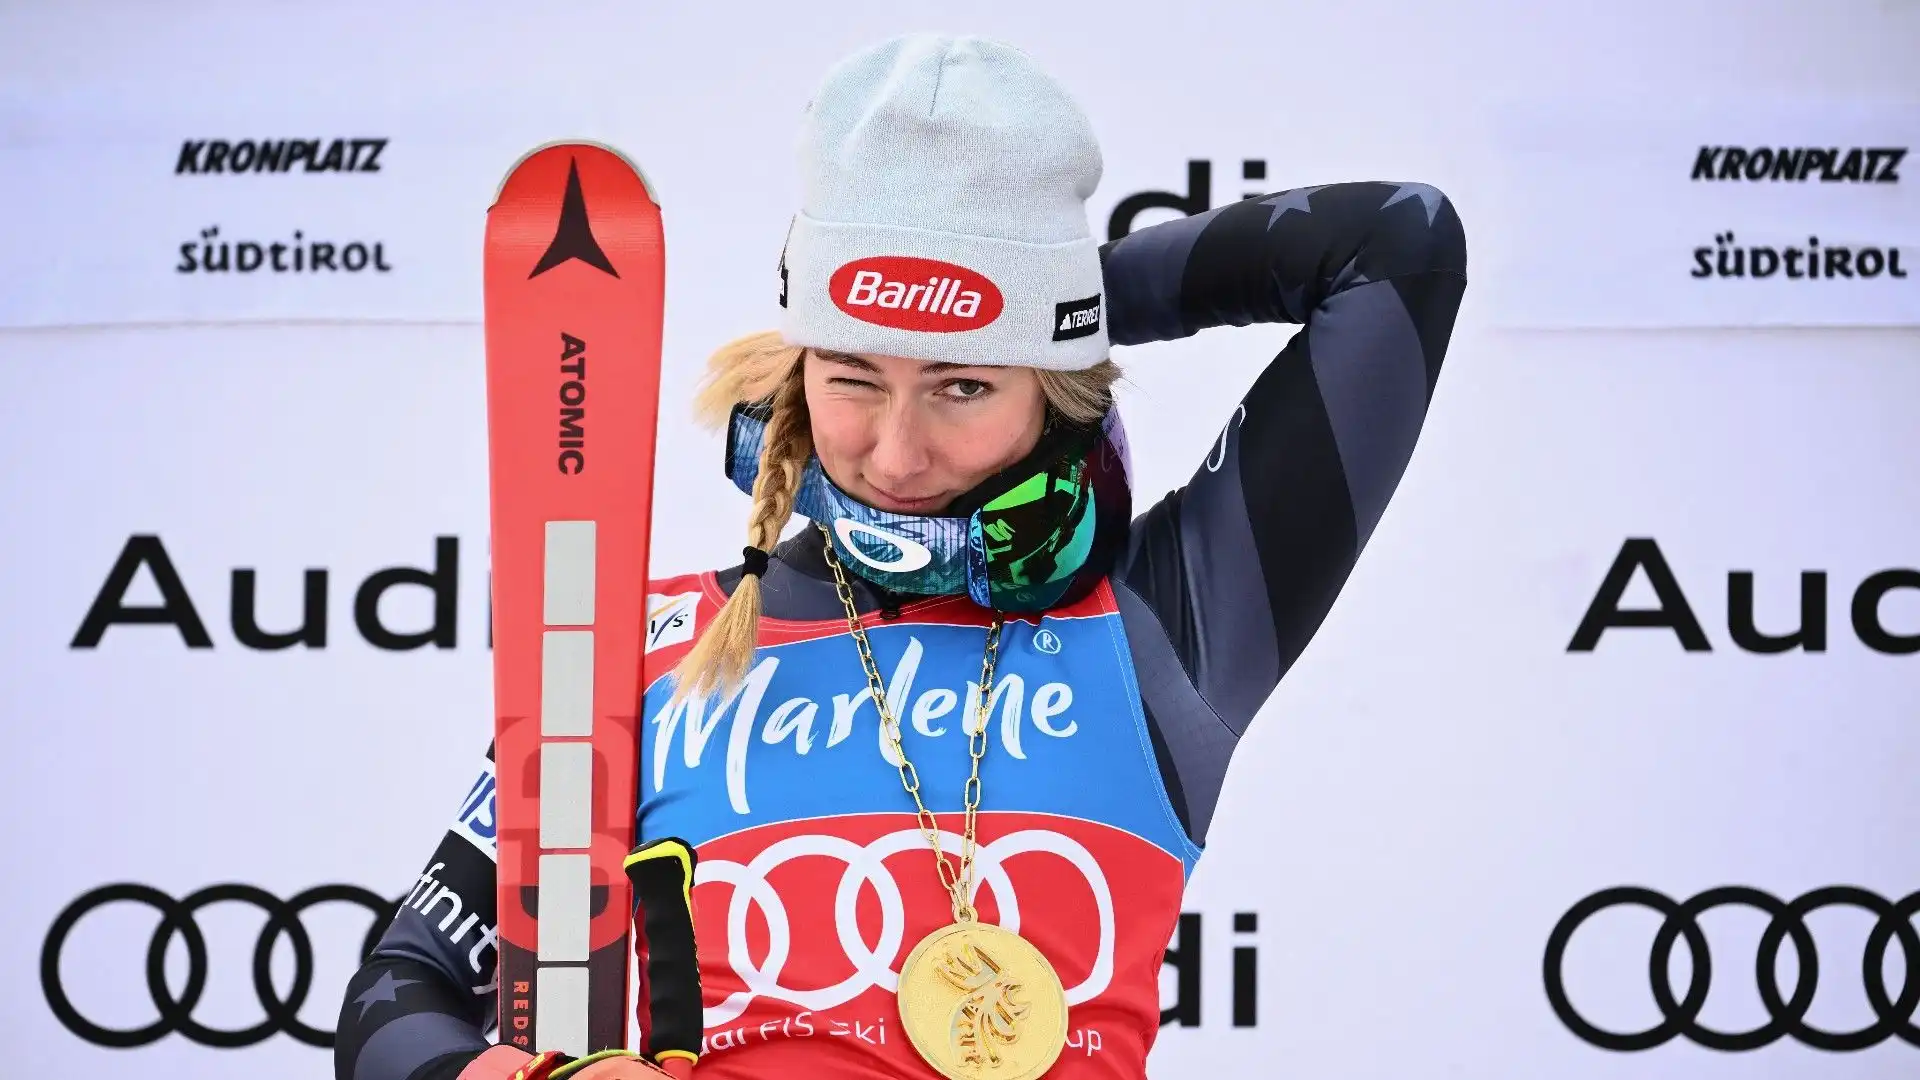 Trionfo numero 83 per la sciatrice statunitense: superata Lindsey Vonn